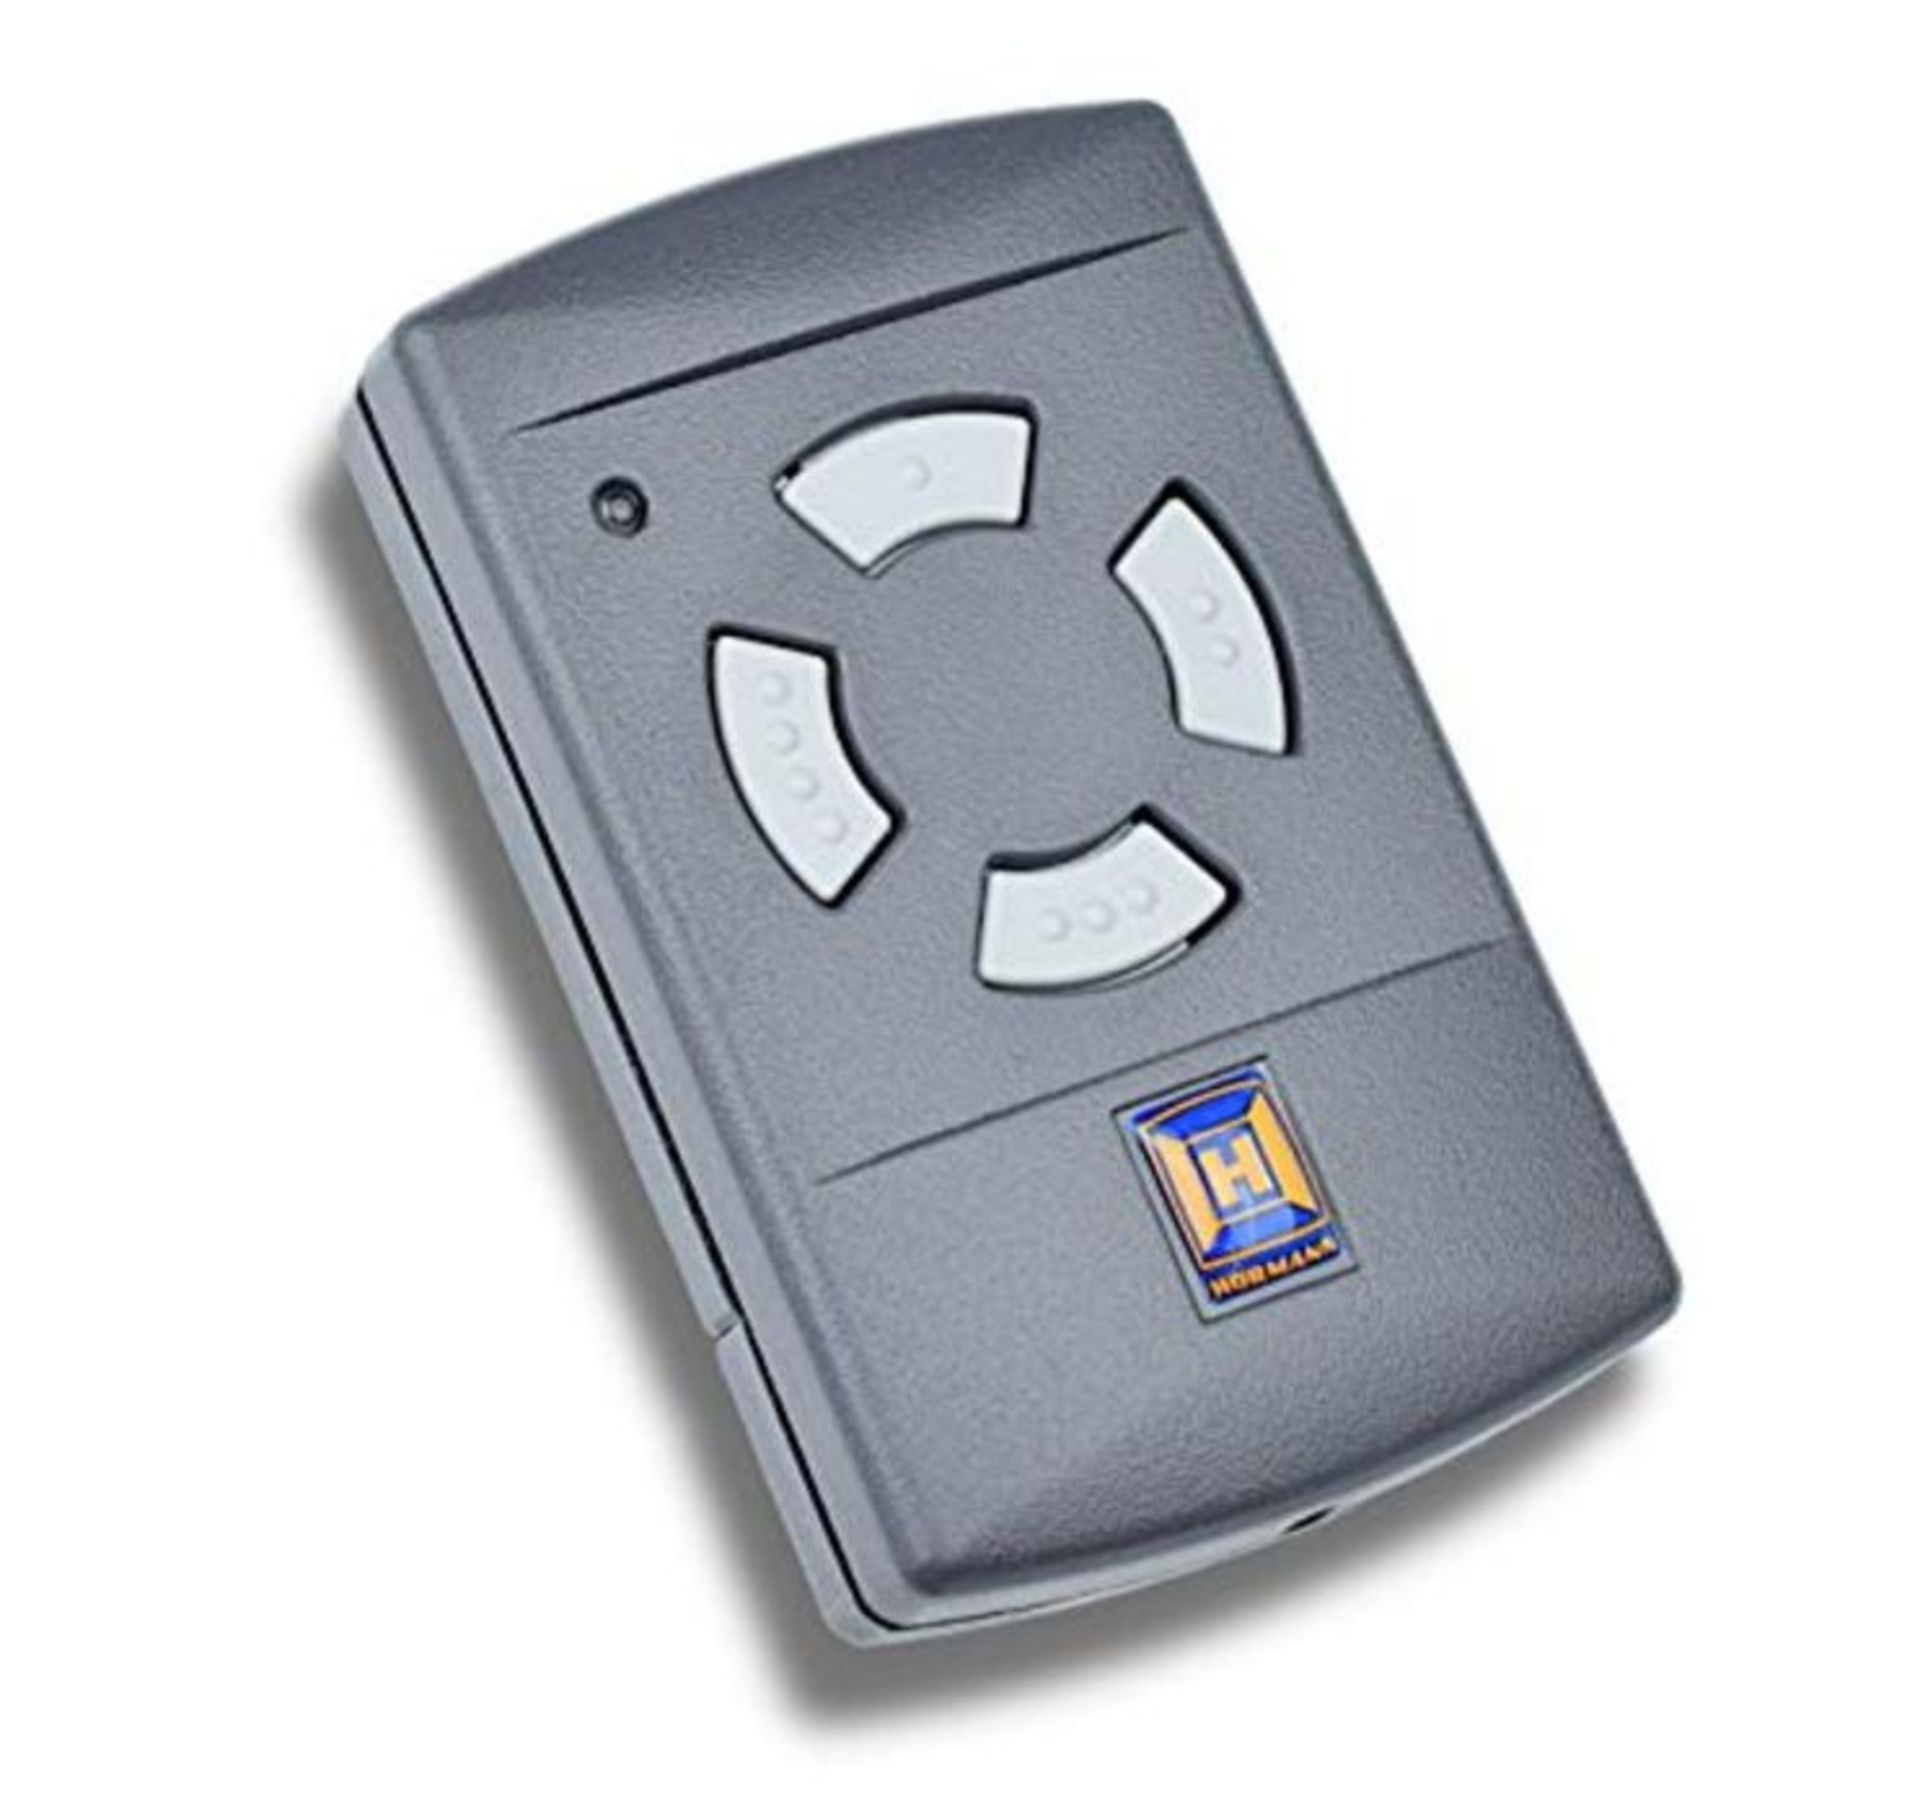 Hörmann 4 Button Mini Handheld Transmitter HSM4, 40 MHz, 1 Piece, 437014